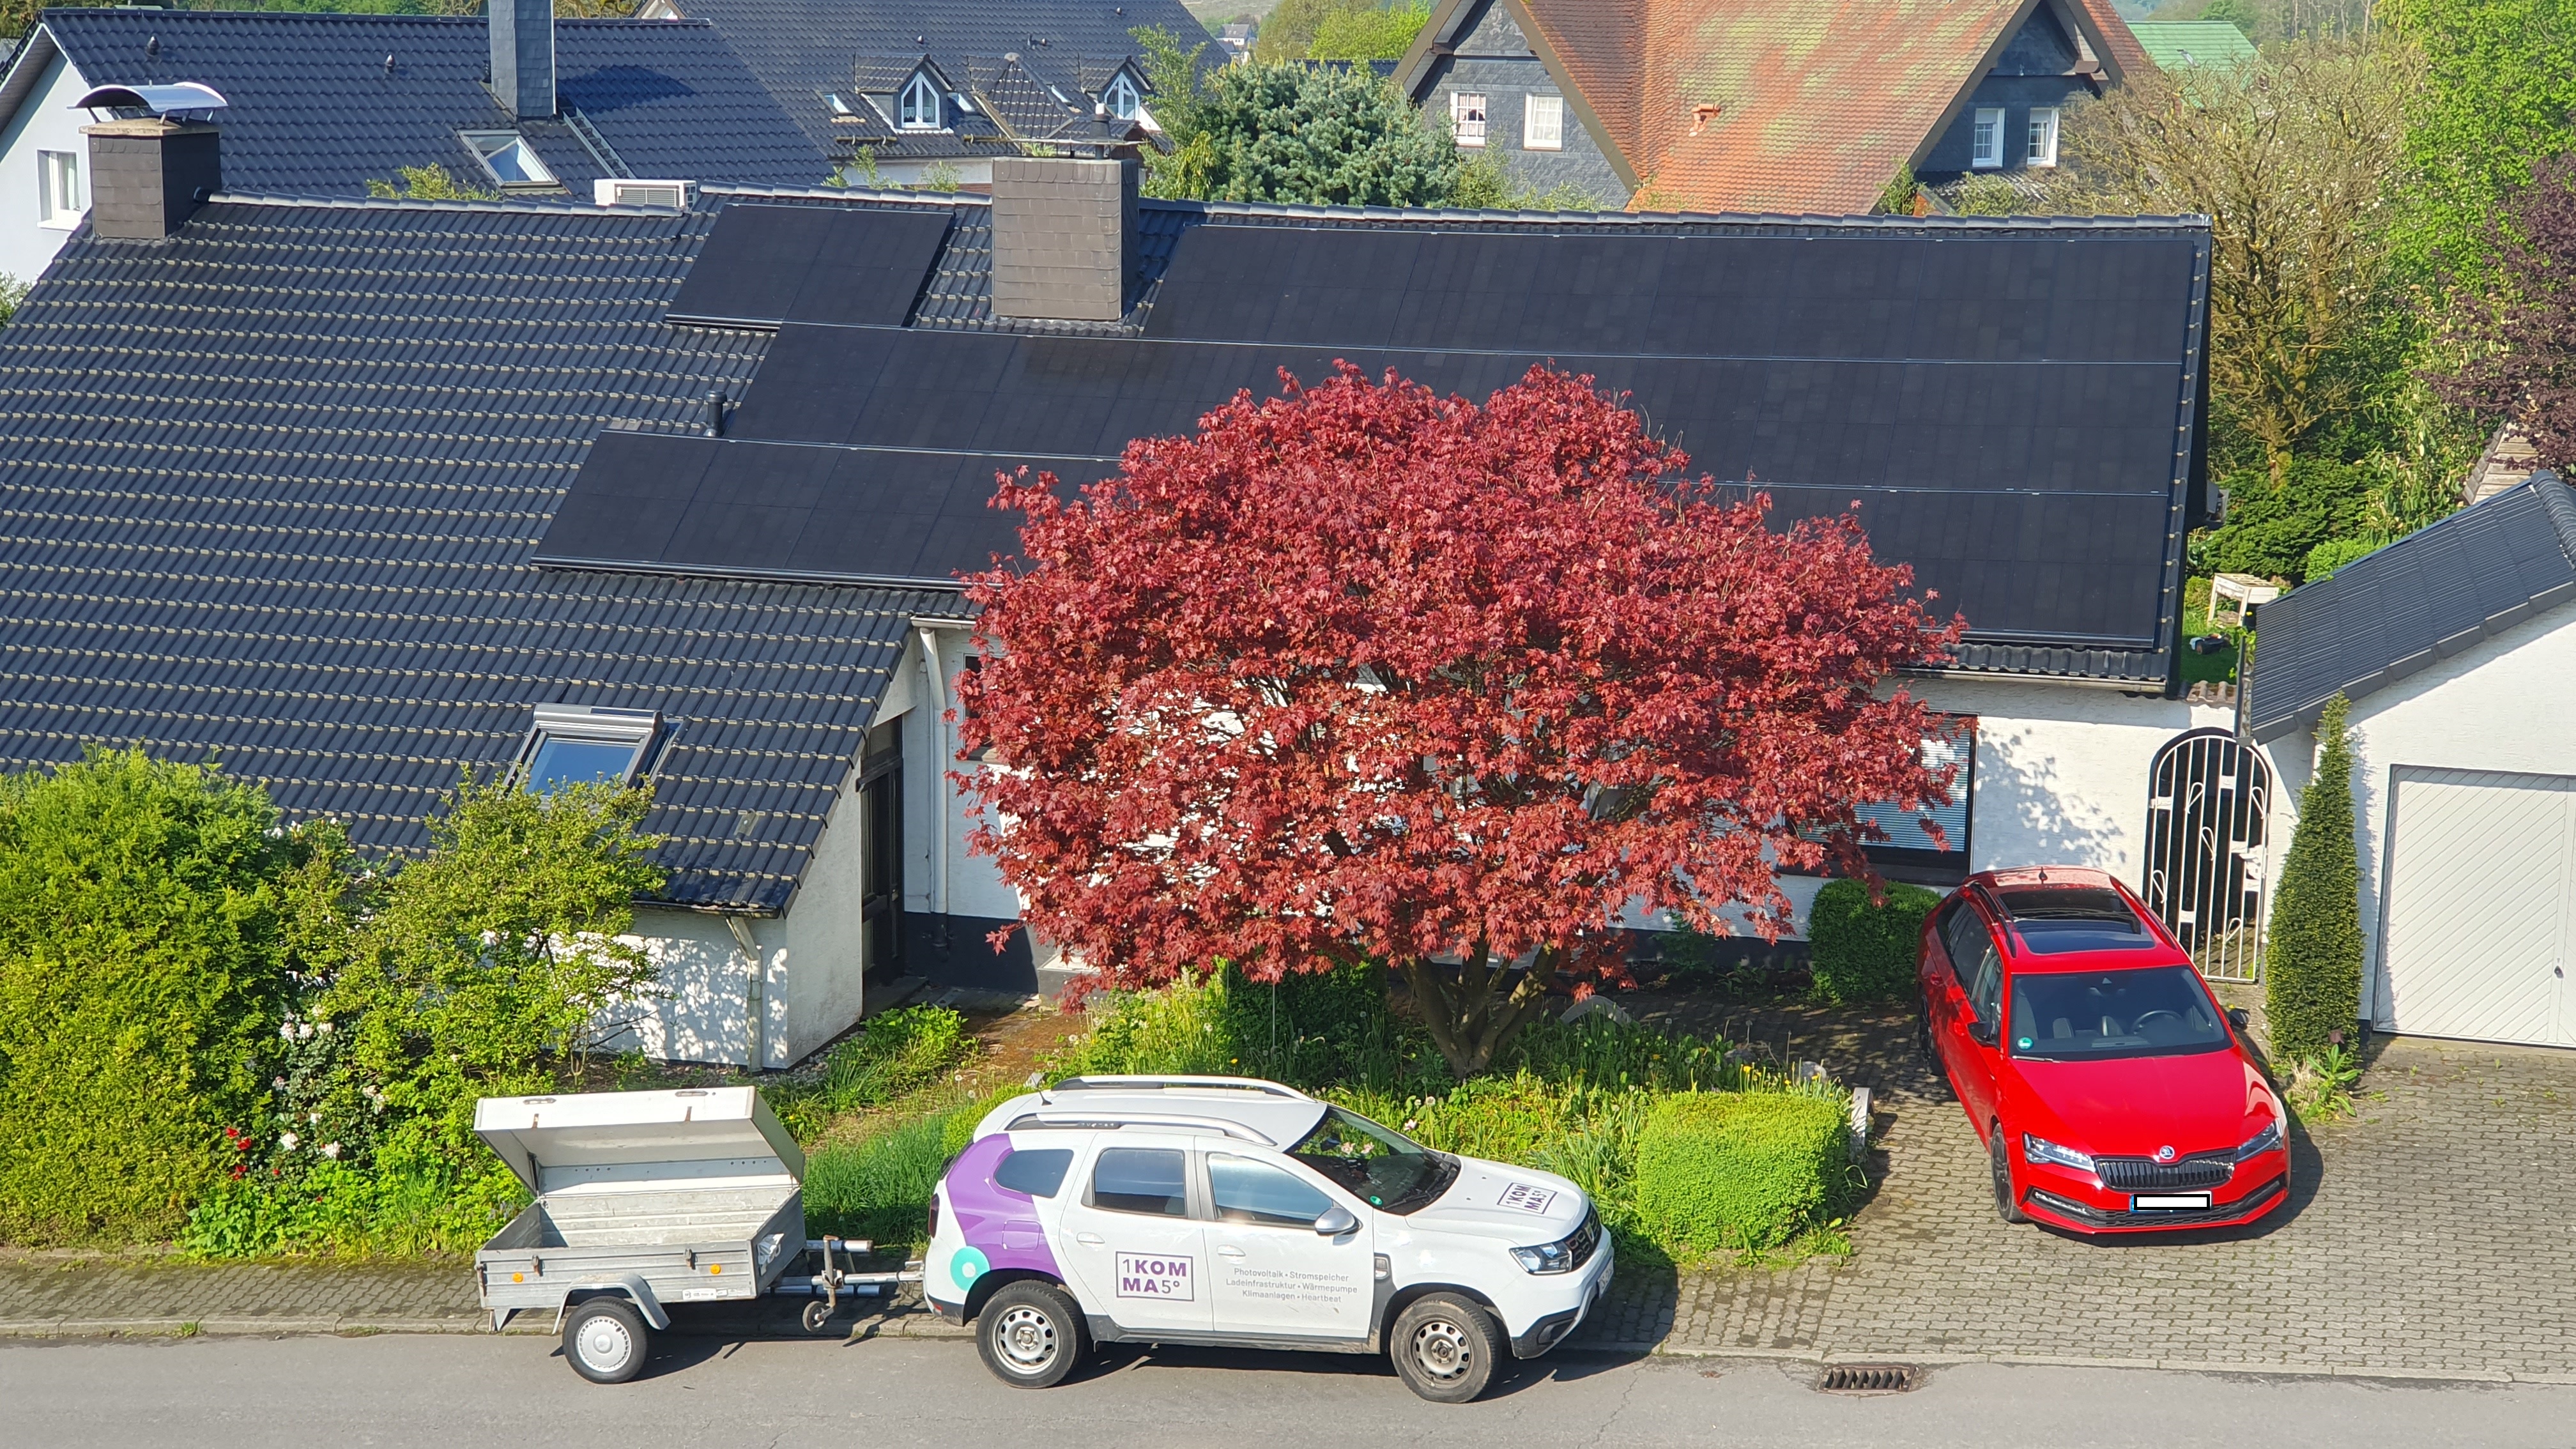 Bilder 1KOMMA5° Kierspe: Meisterbetrieb für Photovoltaik, Solaranlagen & Wärmepumpen